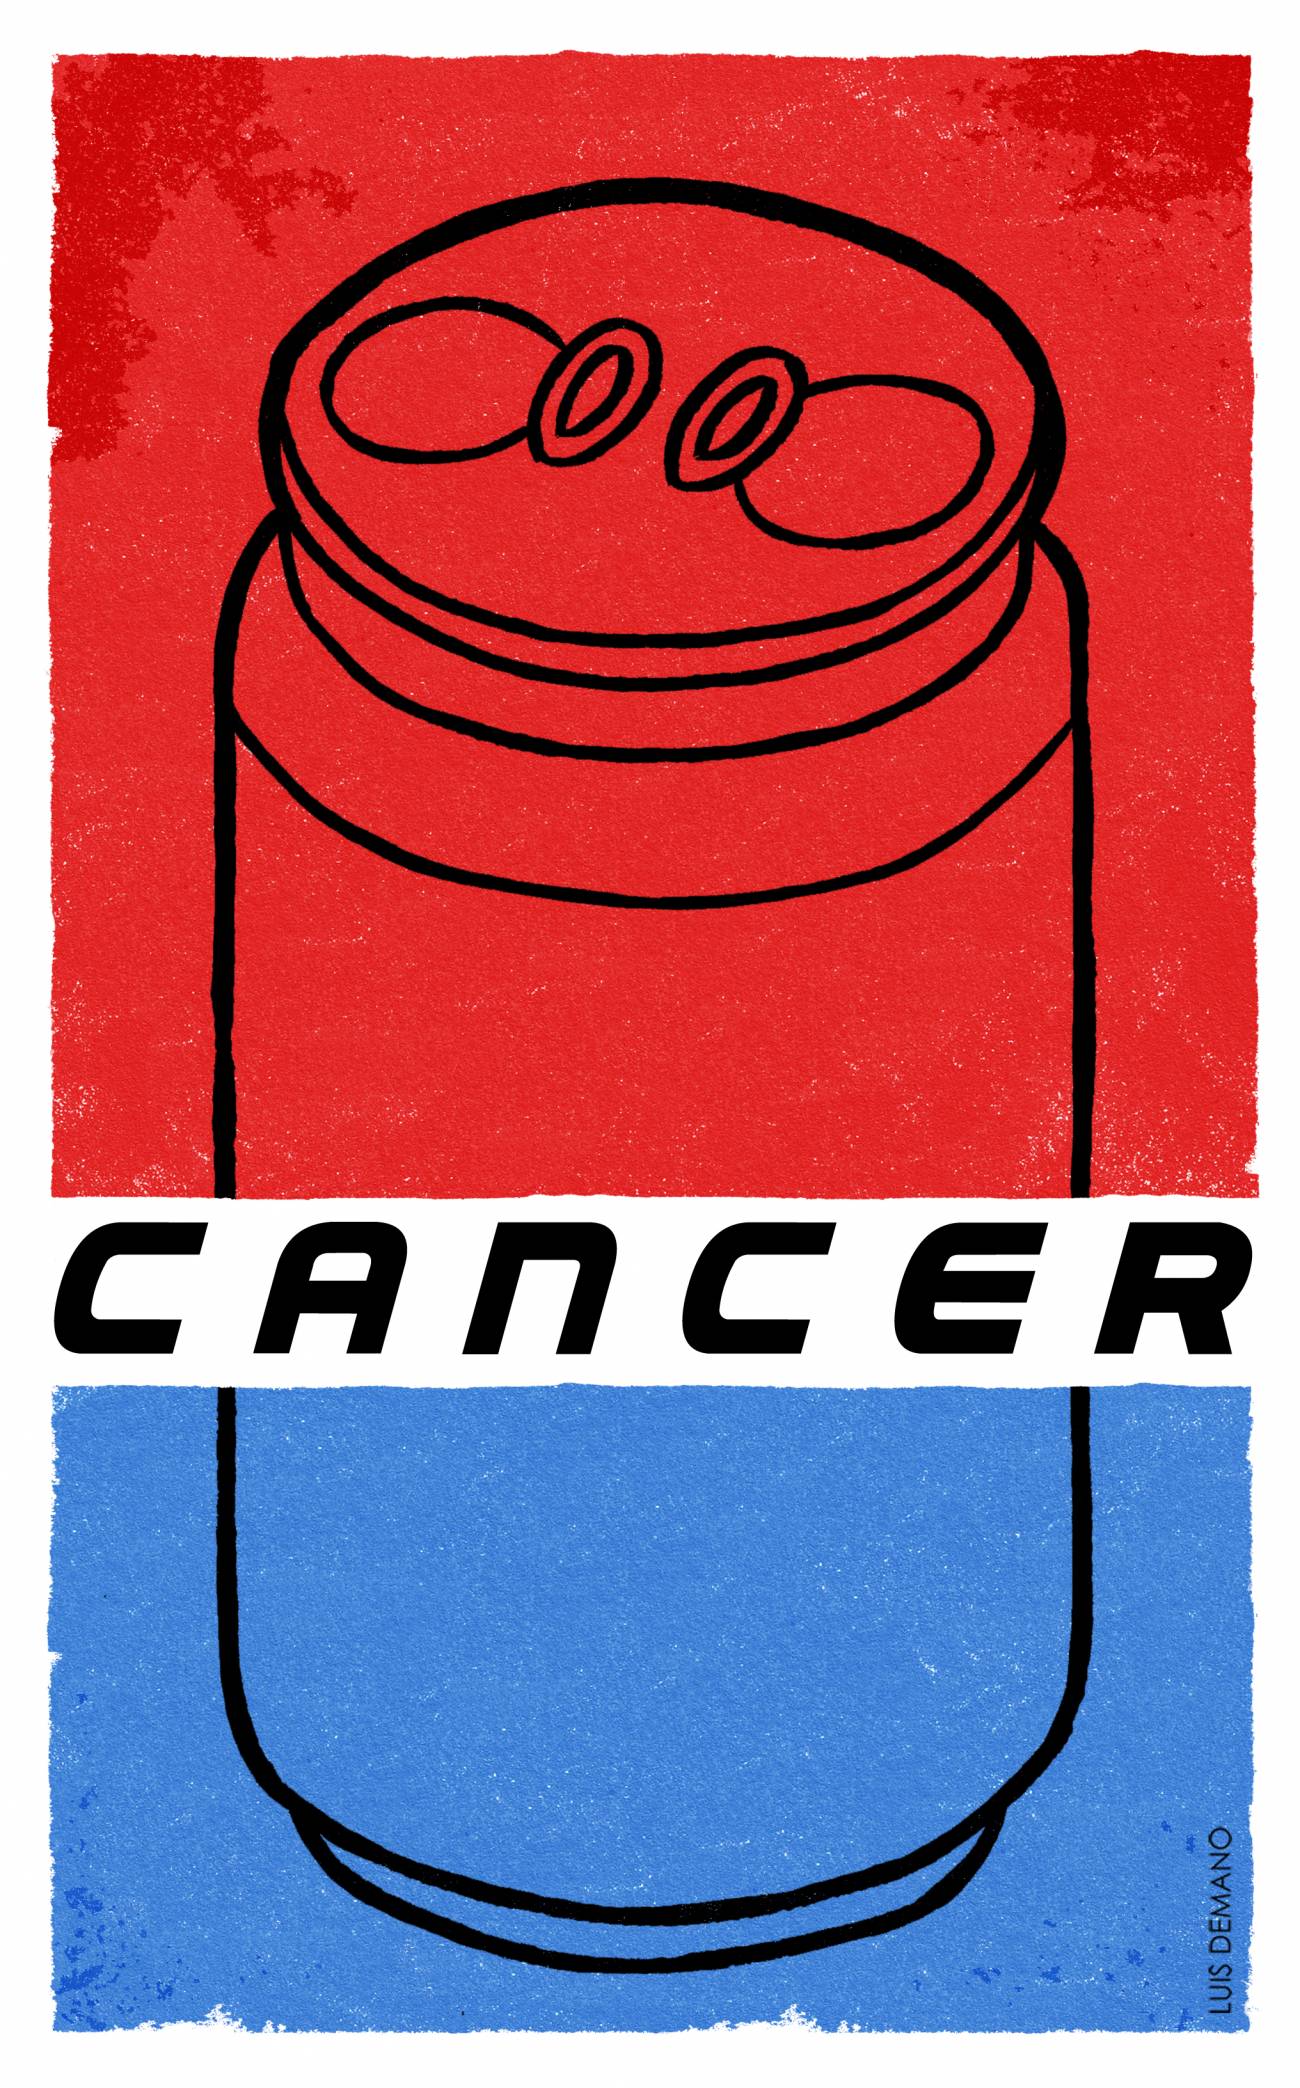 El consumo de refrescos puede incrementar el riesgo de cáncer de páncreas